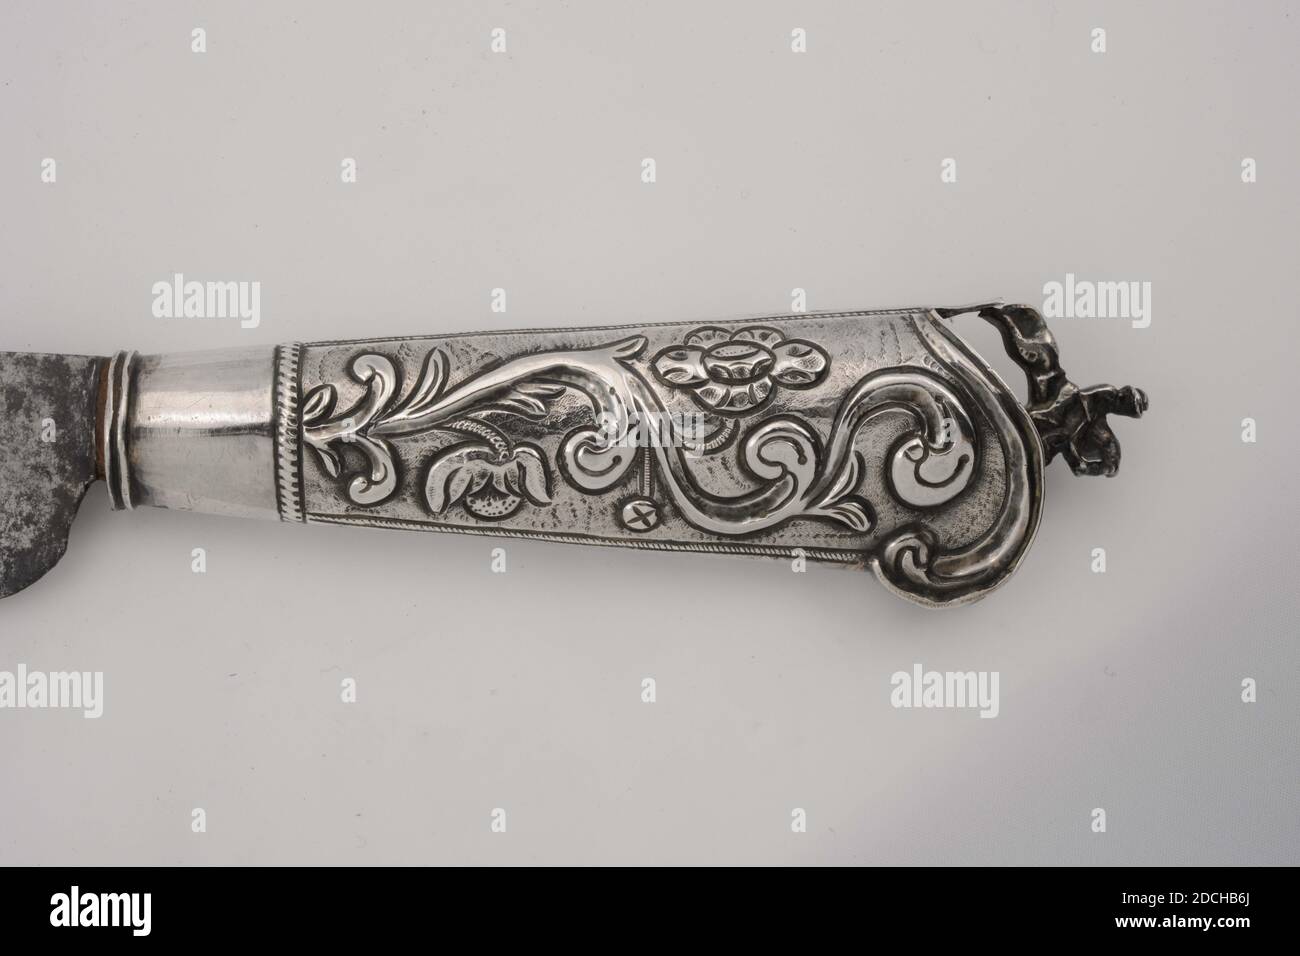 Couteau, Anonyme, 1776, argent, fer, général: 25.8 x 2.8 x 2.1cm 258 x 28 x 21mm, fleur, cheval, cavalier, couteau avec une lame en fer et une poignée en argent estampé. La poignée est conique et arrondie à l'extrémité. La poignée est décorée de fleurs et de tendriles en relief, le long des bords bandes décoratives. À l'extrémité de la poignée une couronne sous la forme d'un coureur en fonte à cheval. Sur la lame sont gravées fleurs et feuilles motifs sur un côté, et enfermé dans des boucles le texte: Den windt Mann Reijchlick Ehren Die Yémen affeborren 1776. De l'autre côté sont gravés des motifs floraux et géométriques qui Banque D'Images